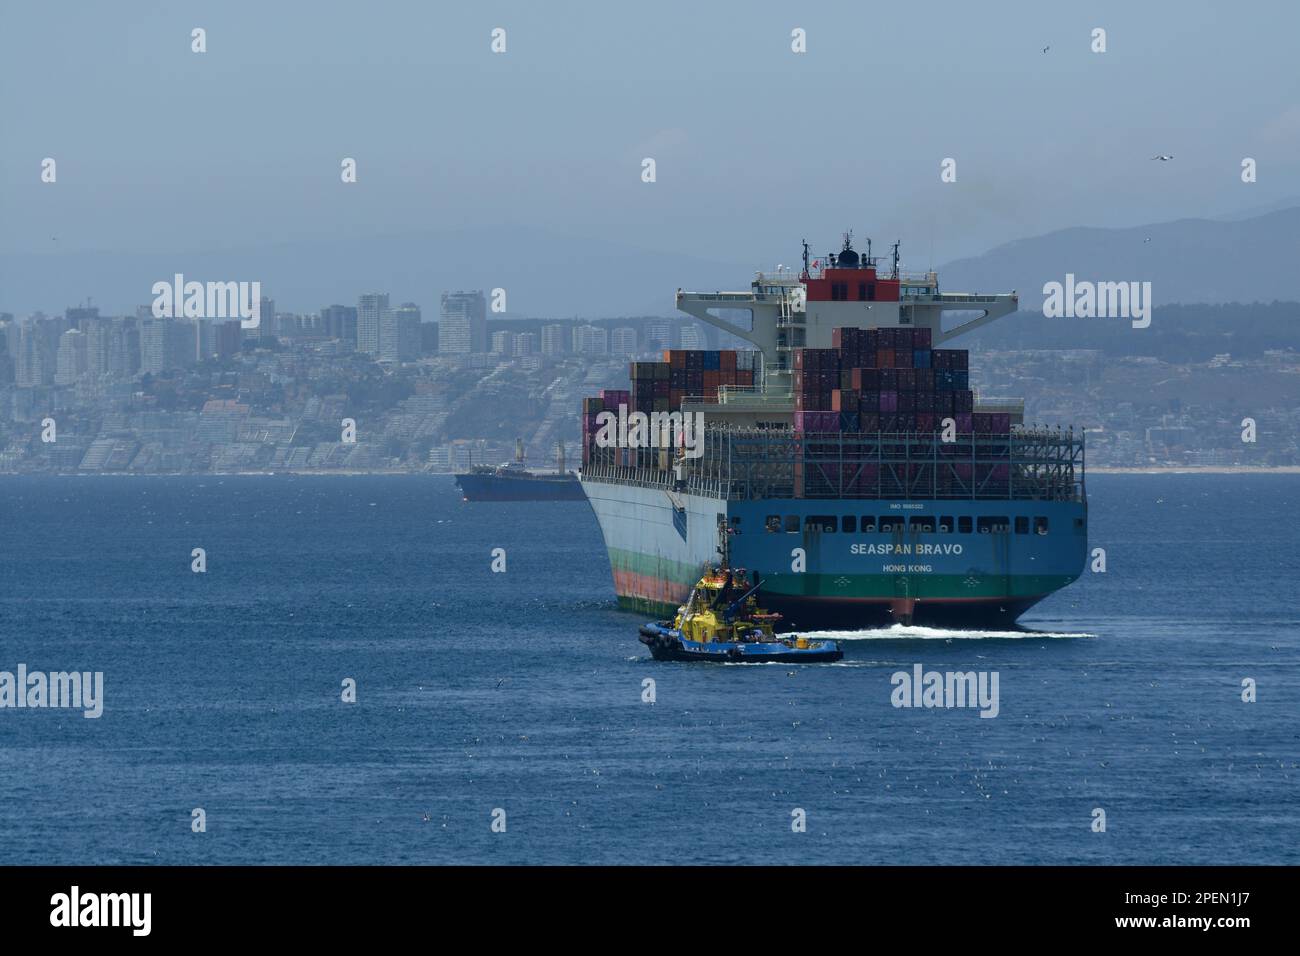 Porto di Valparaiso - Container Freighter in partenza dal porto accompagnato da un rimorchiatore giallo e blu. Acque calme con Valparaiso sullo sfondo. Foto Stock